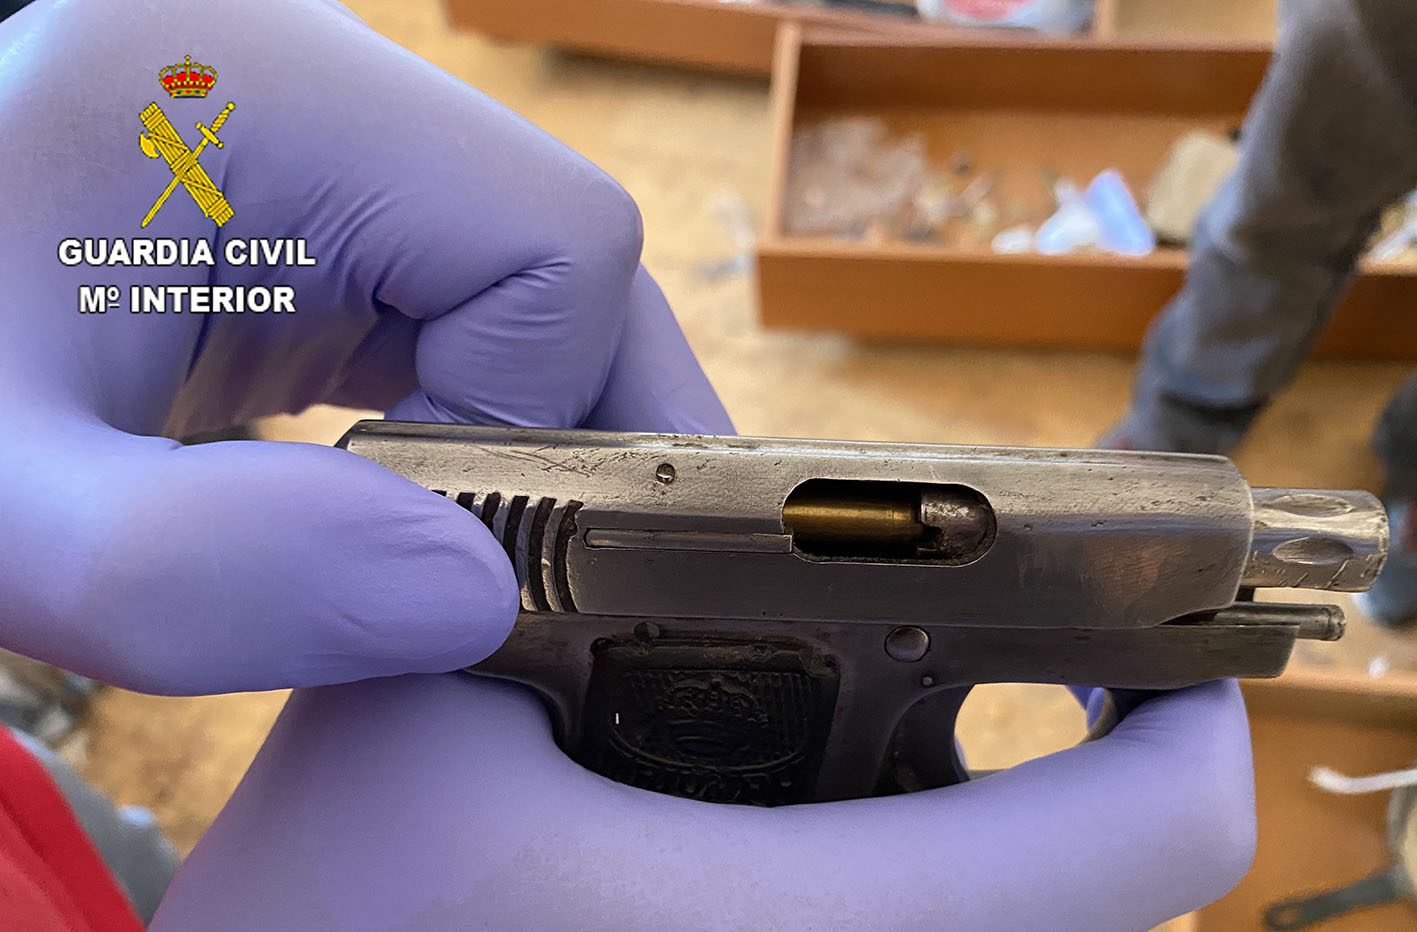 Una de las pistolas incautadas se encontraba escondida en el interior de un cojín y lista para ser disparada.